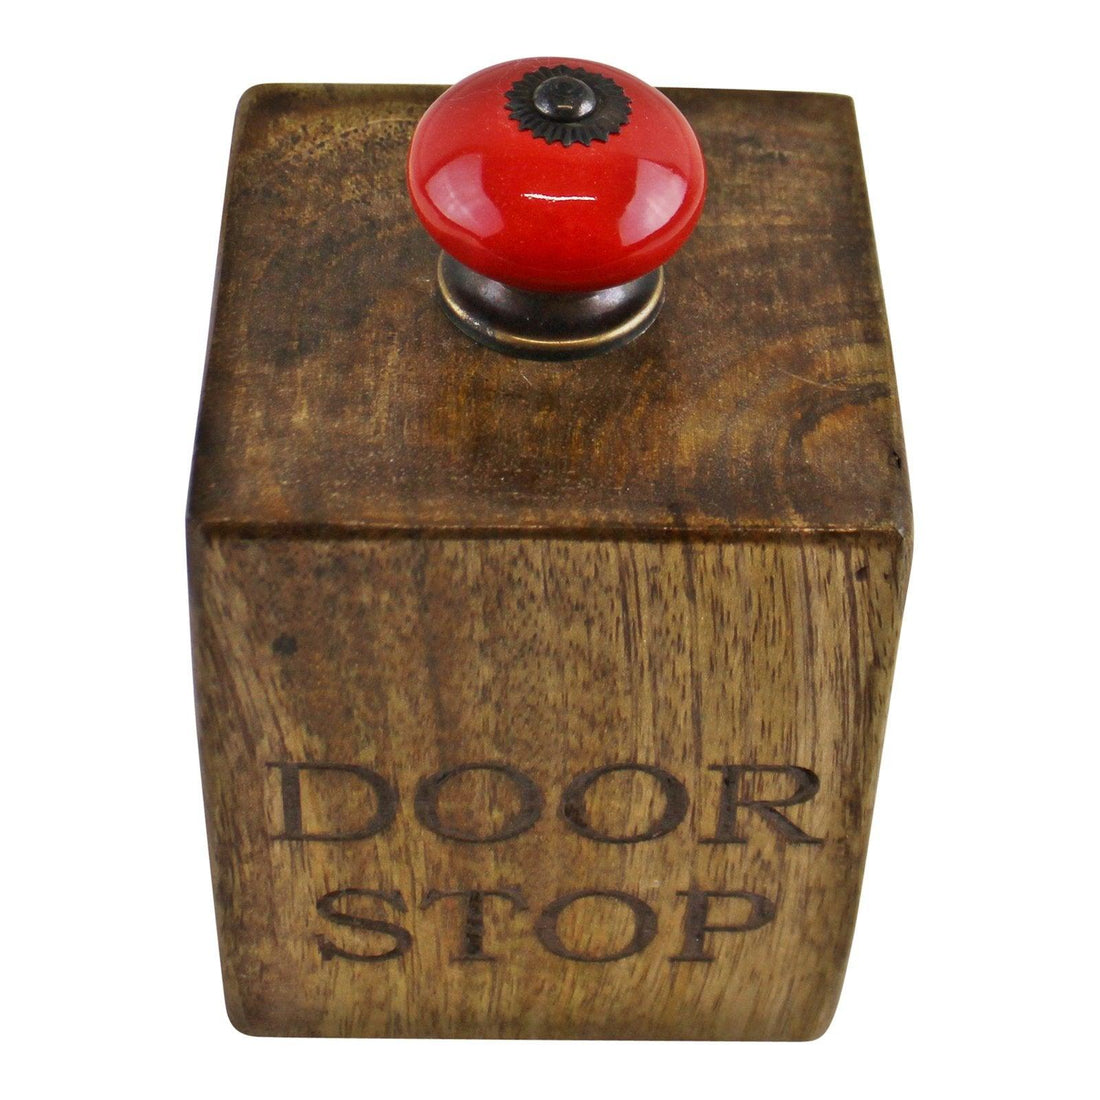 Mango Wood Doorstop With Red Ceramic Knob - £27.99 - Door Stops 